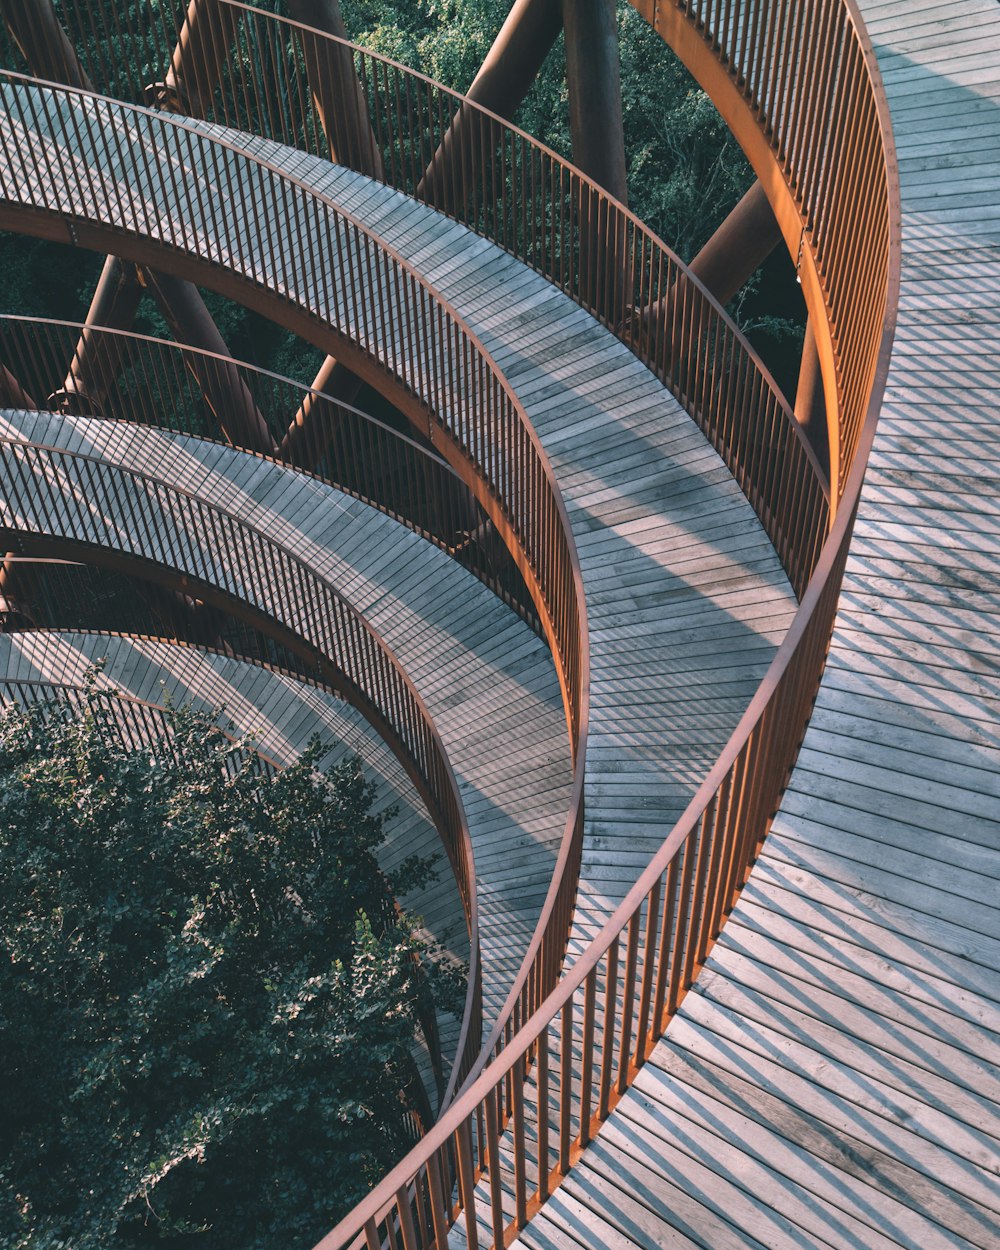 Escalera de caracol marrón cerca de árboles verdes durante el día